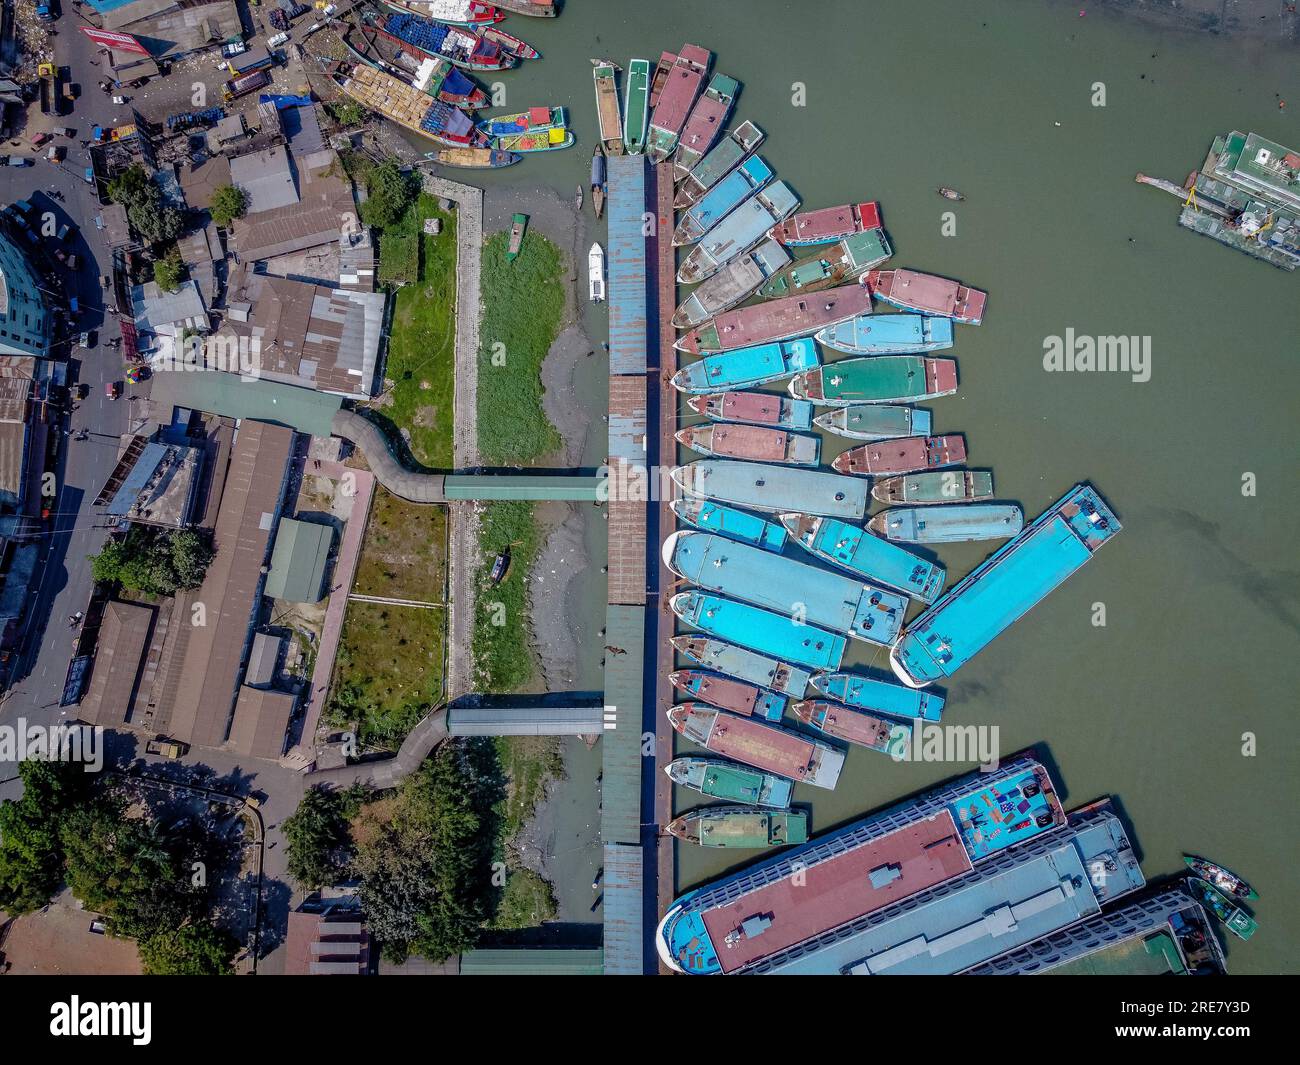 Der Hafen von Barishal am 26. Juli 2023, offiziell bekannt als Barishal River Port, der zweitgrößte und geschäftigste Flusshafen in Bangladesch nach Dhaka in Bezug auf den Personenverkehr. Es liegt am Ufer des Kirtankhola Flusses in der Stadt Barishal. Der Hafen verkehrt täglich zwischen Dhaka und Barishal sowie den meisten Bezirken im Süden des Landes, darunter Chandpur, Narayanganj, Bhola, Laxmipur, Pirojpur und Barguna. Das Unternehmen betreibt auch Verbindungen zwischen den Bezirken rund um Barishal. (Foto: Mustasinur Rahman Alvi/Sipa USA) Stockfoto